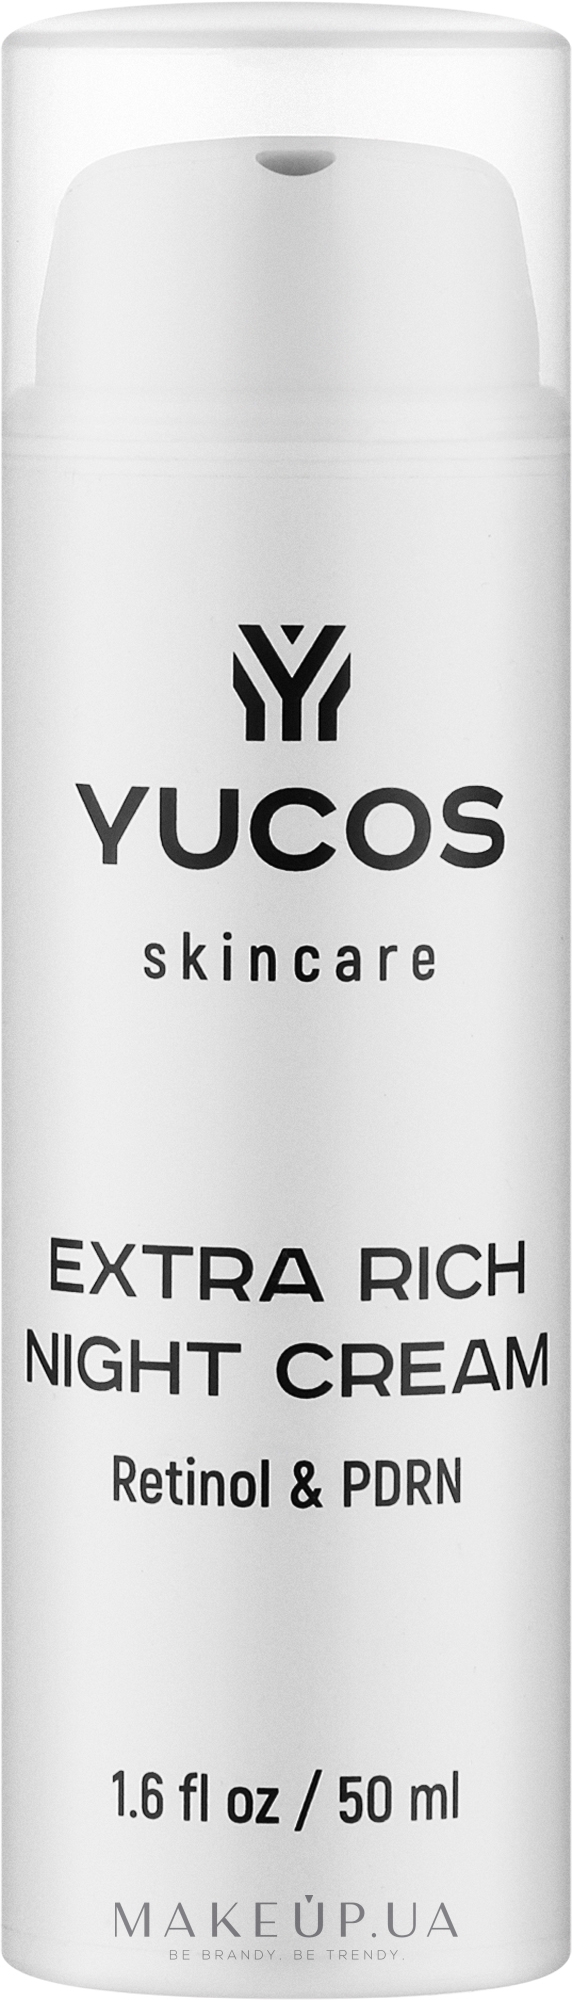 Восстанавливающий ночной крем с ретинолом и полинуклеотидами - Yucos Extra Rich Night Cream Retinol & PDRN — фото 50ml